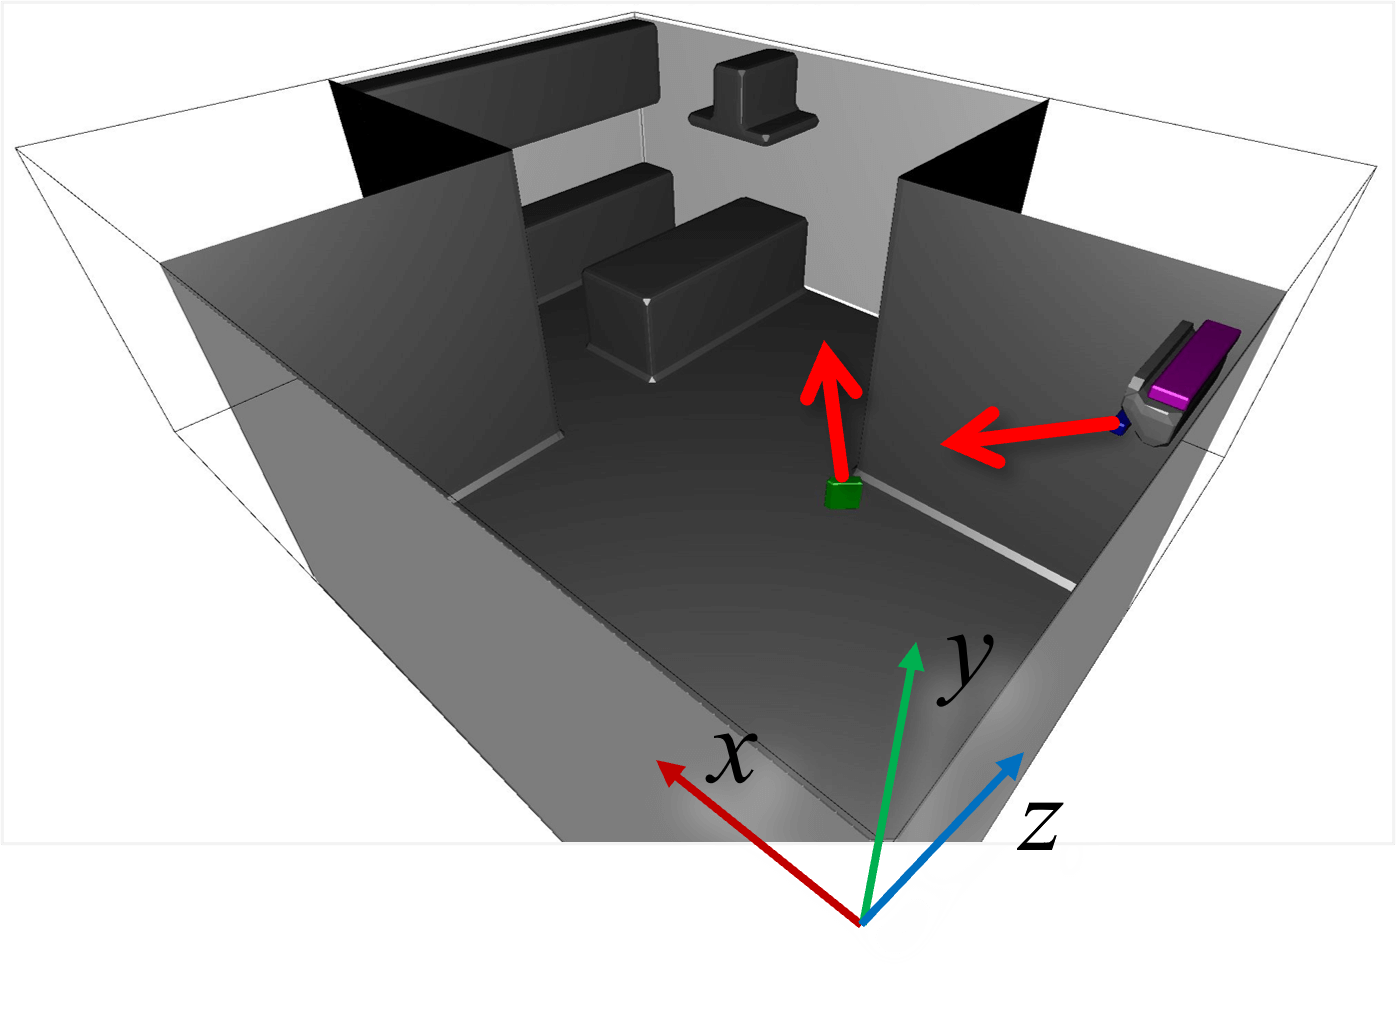 構築された境界条件の全体図（天井以外を可視化）。赤矢印はエアコン及びサーキュレーターからのおおよその風向き。